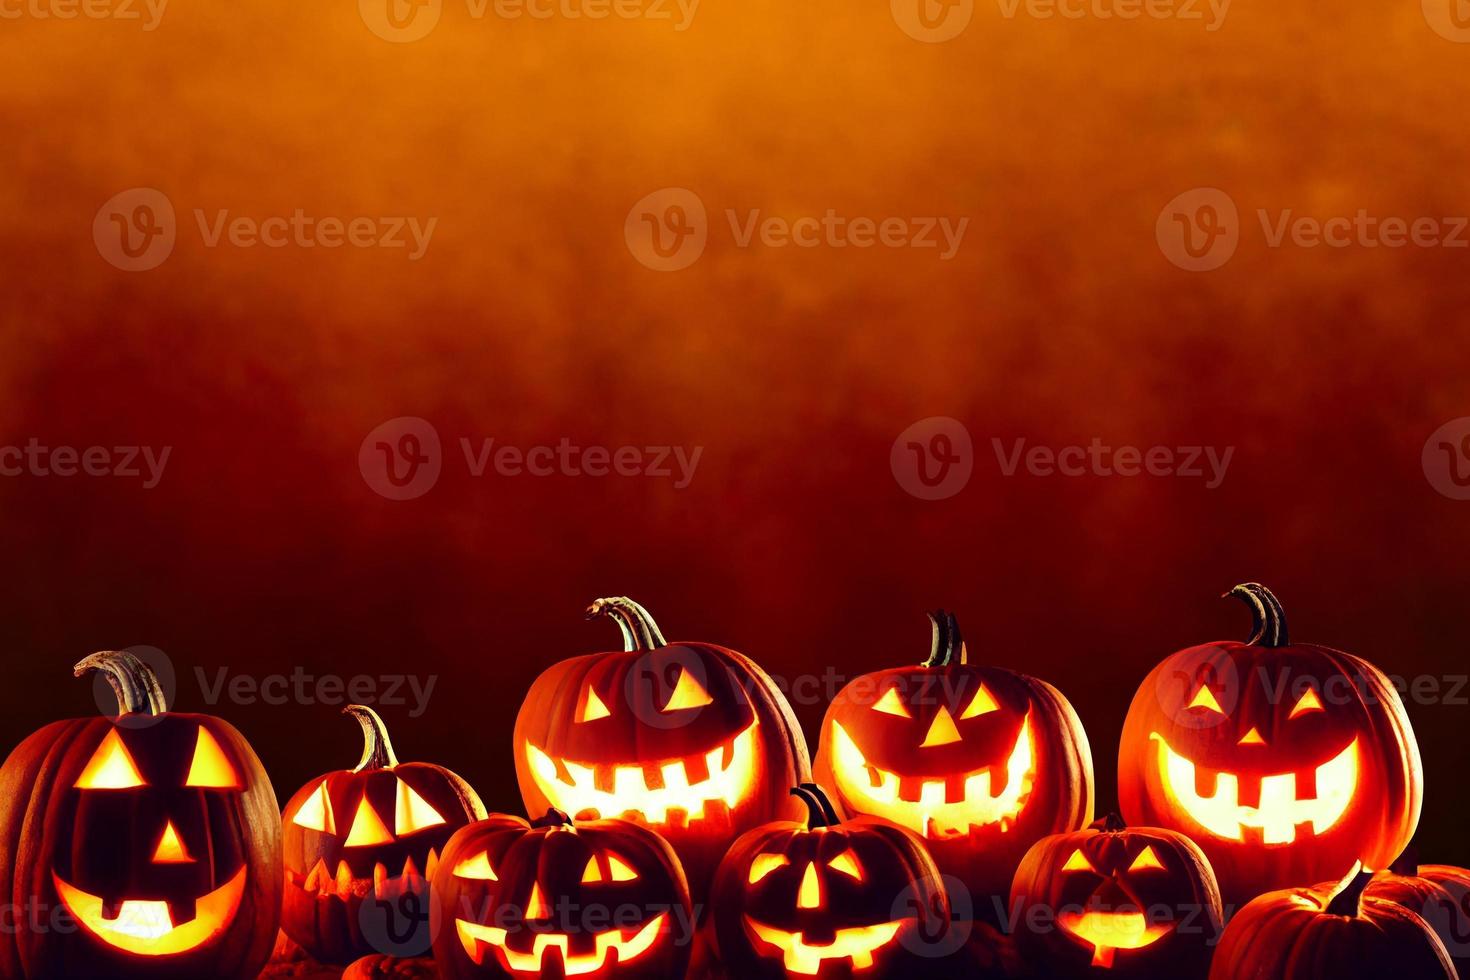 una fila de calabazas de halloween jack olantern talladas a lo largo de la parte inferior de la imagen contra un fondo grunge naranja oscuro foto